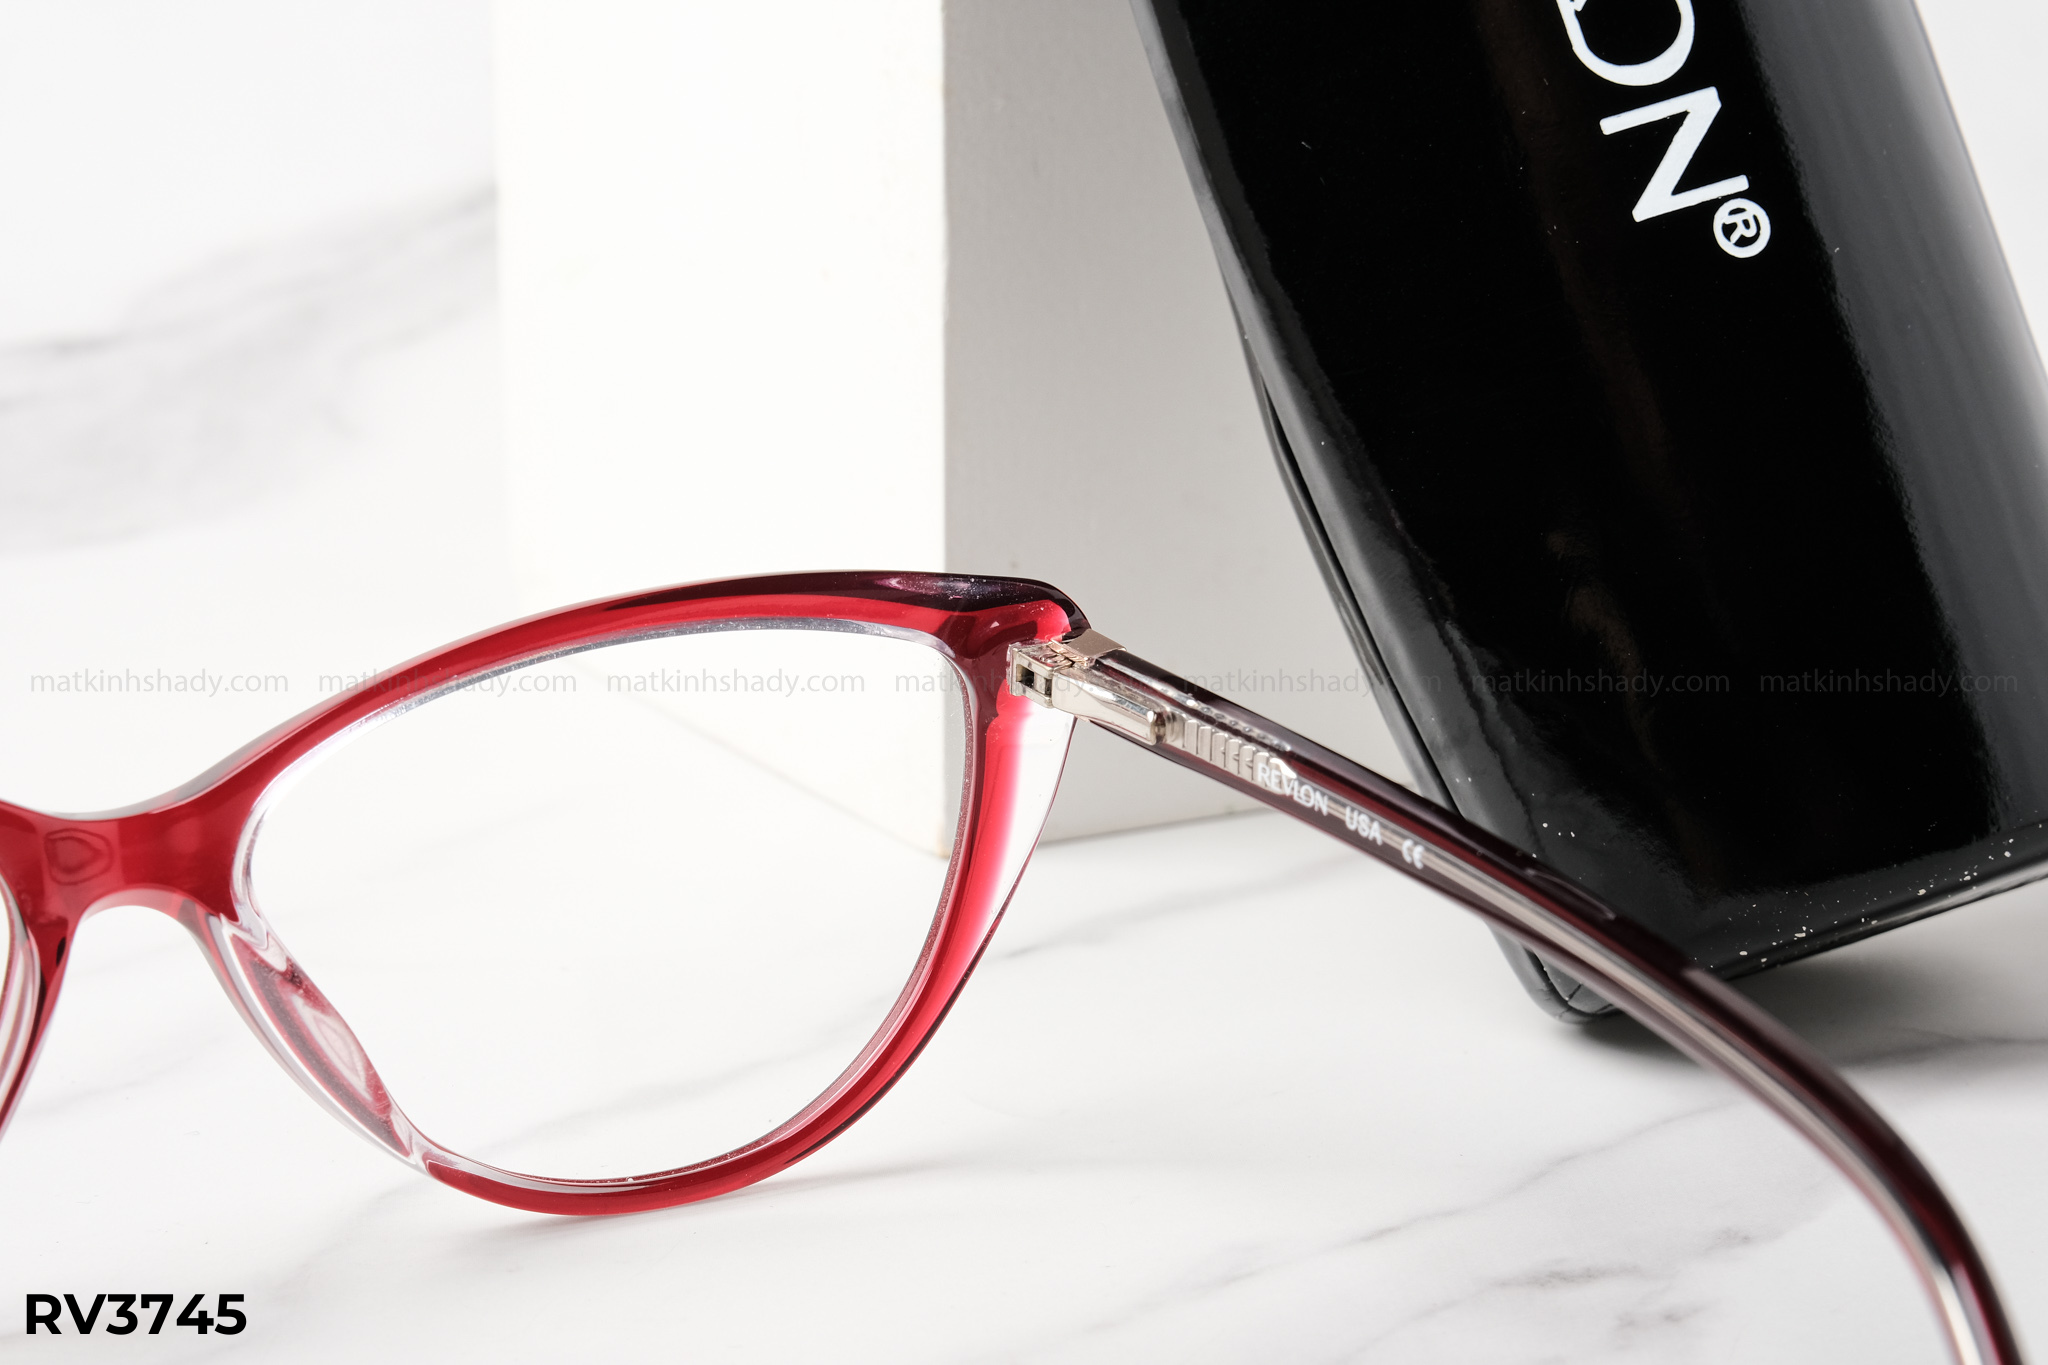  Revlon Eyewear - Glasses - RV3745 